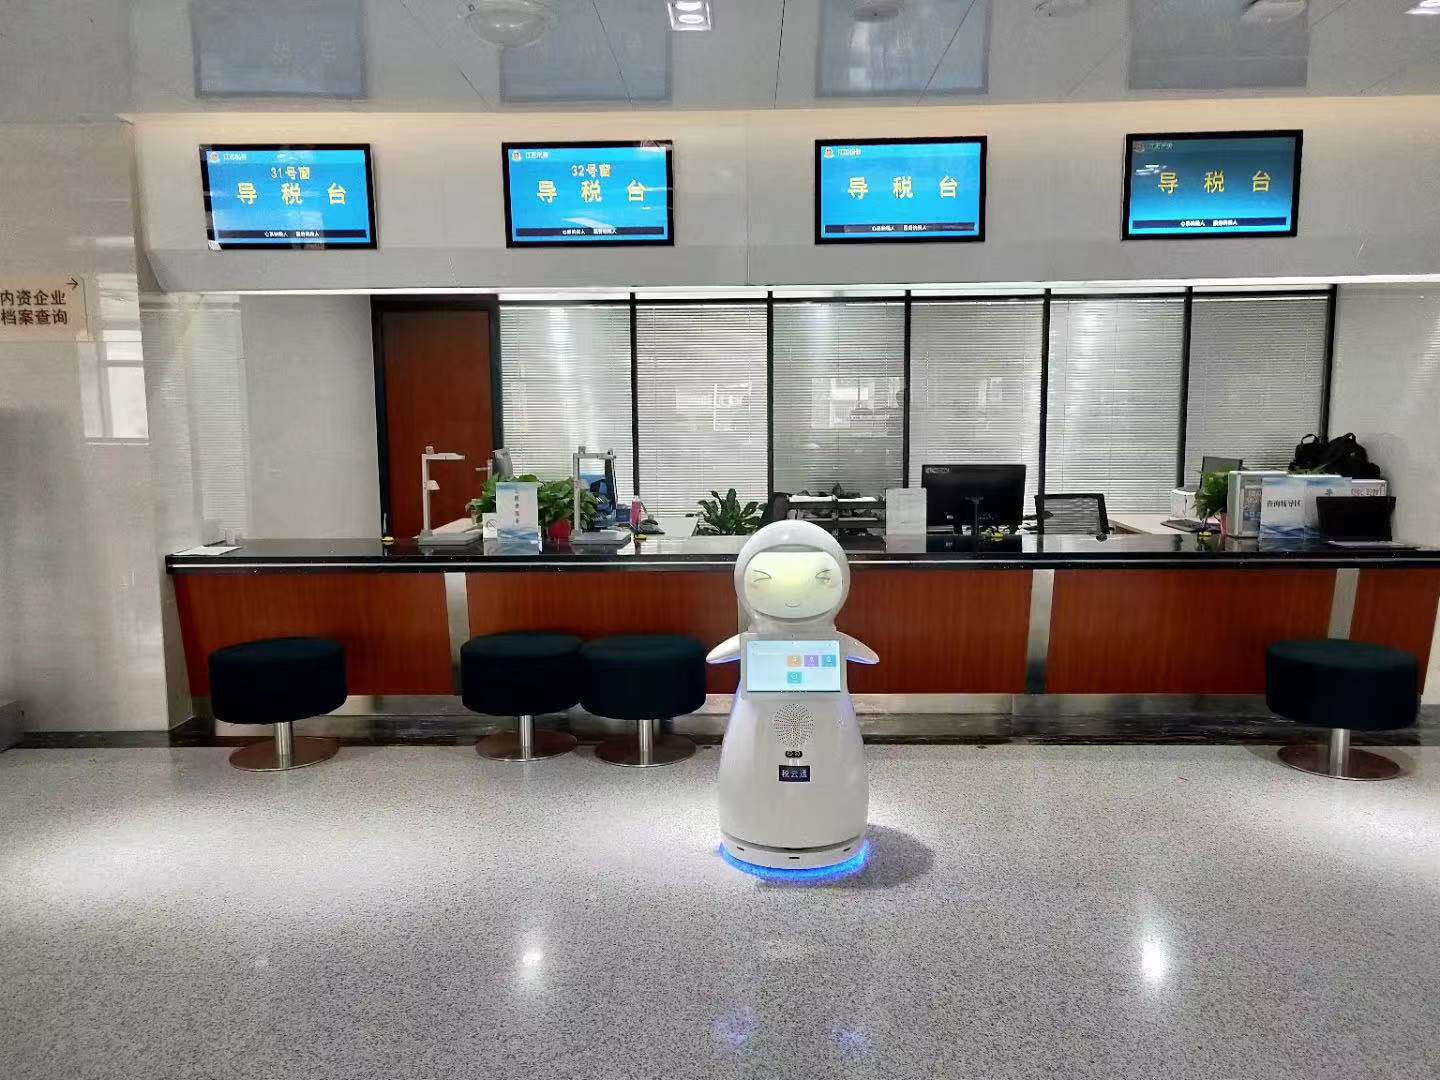 兰州智能机器人制造厂家 服务至上 昆山新正源机器人智能科技供应